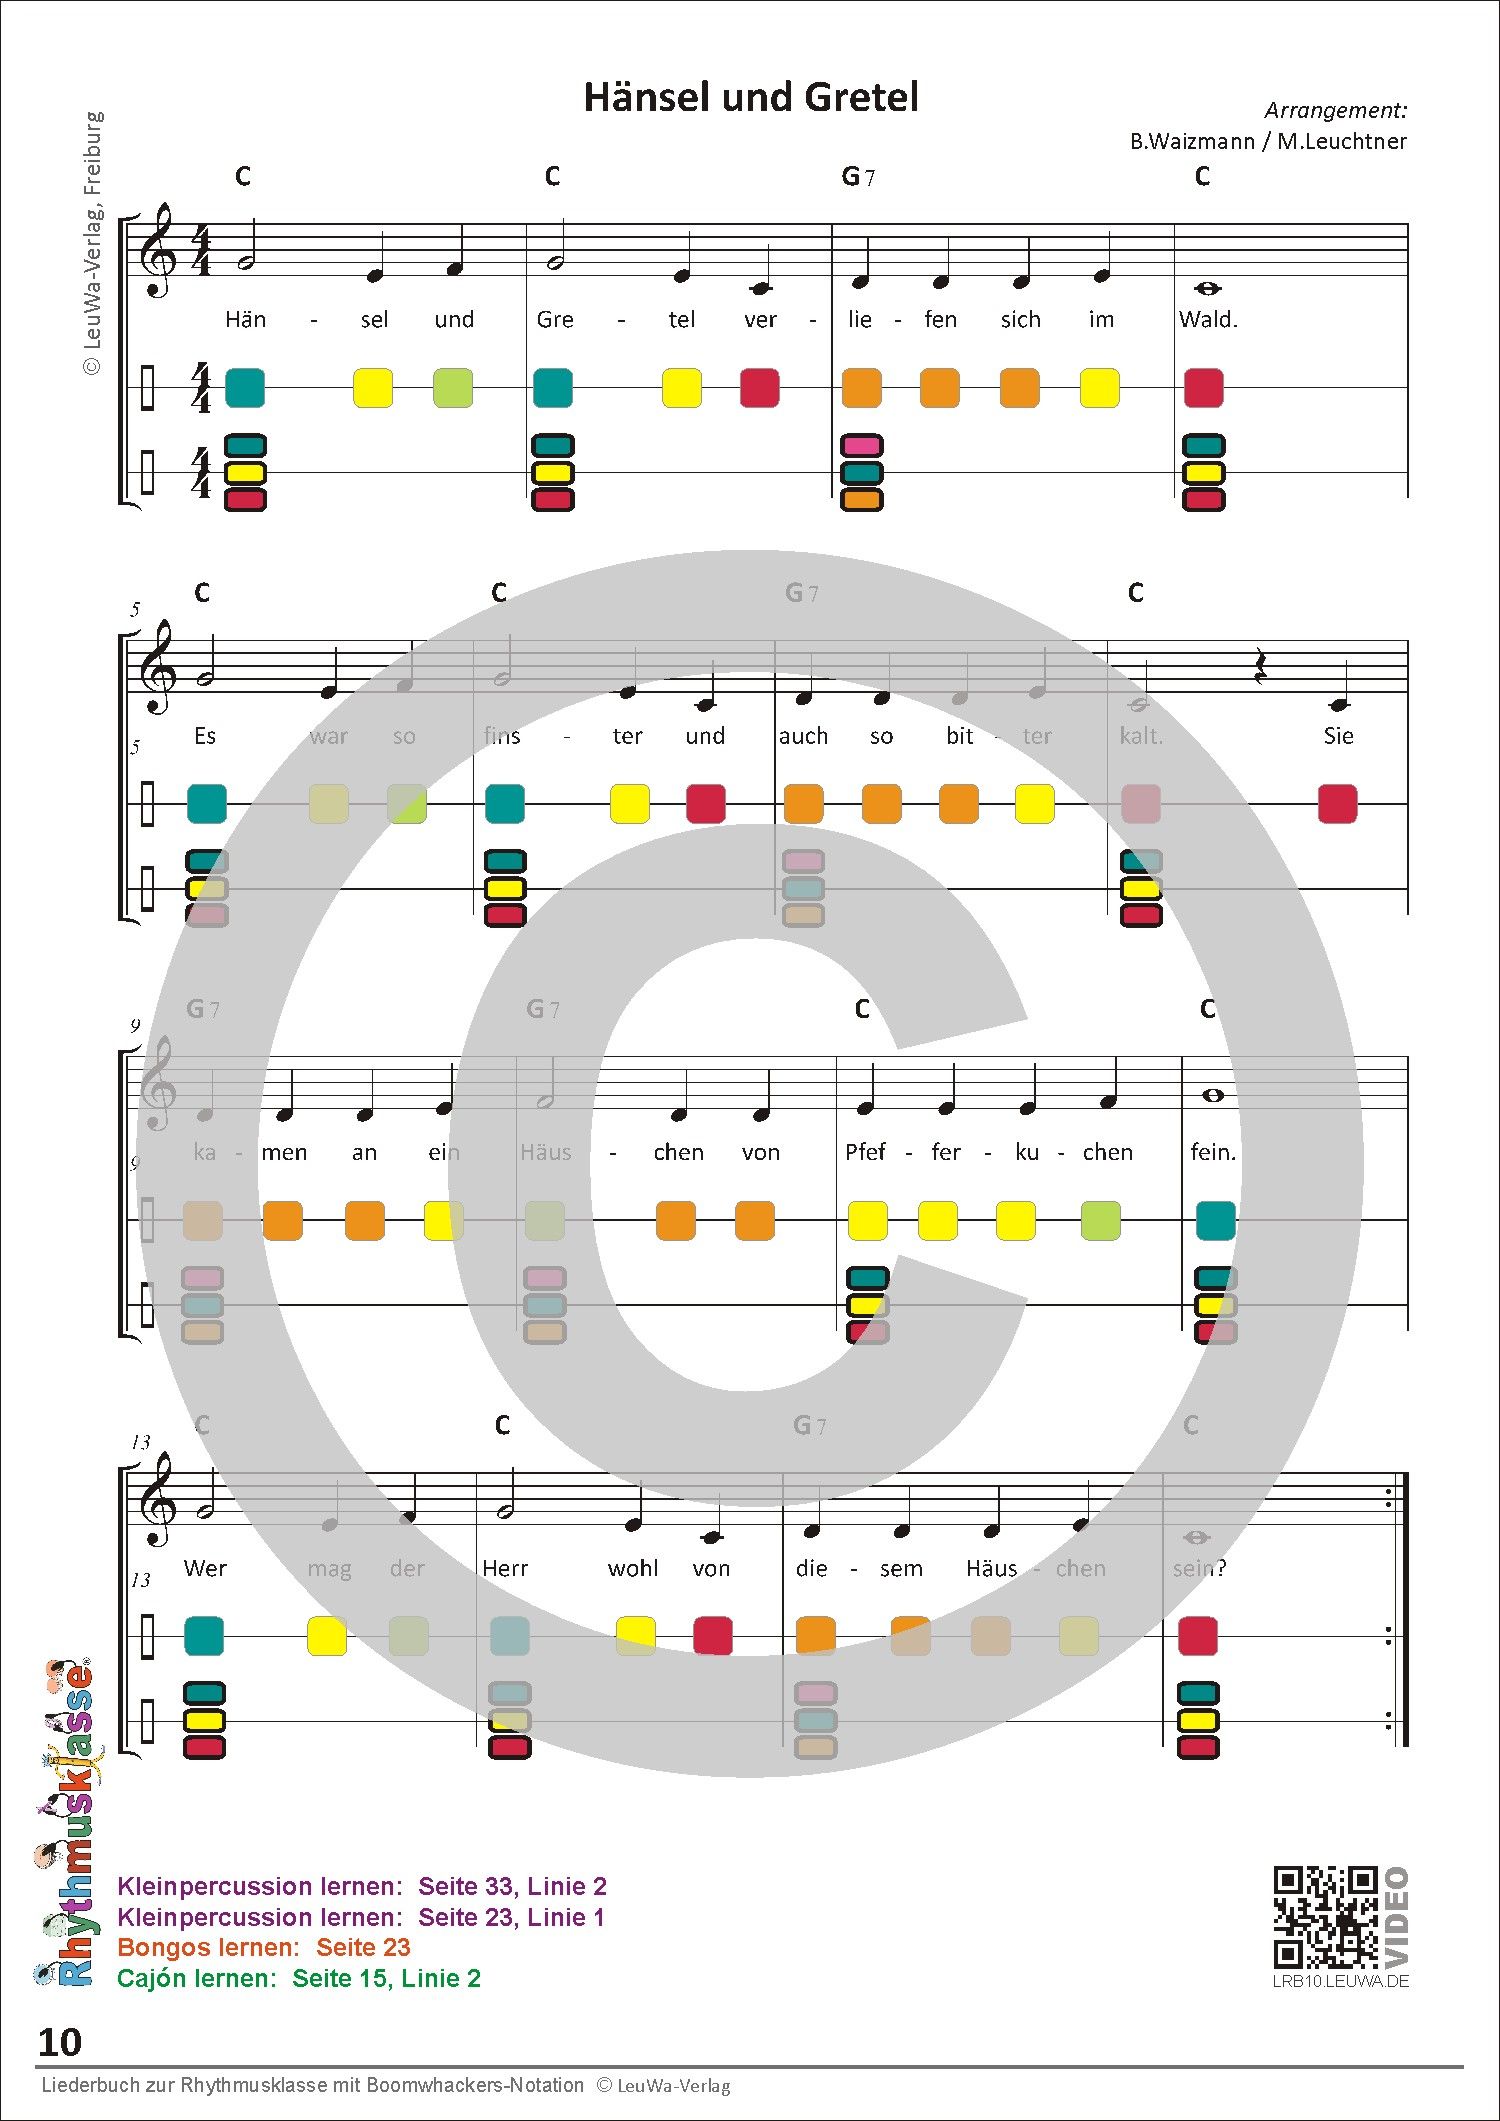 Auszug aus dem Liederheft für die Grundschule | Melodie, Rhythmus und Liedtexte | von Klasse 1 bis 4